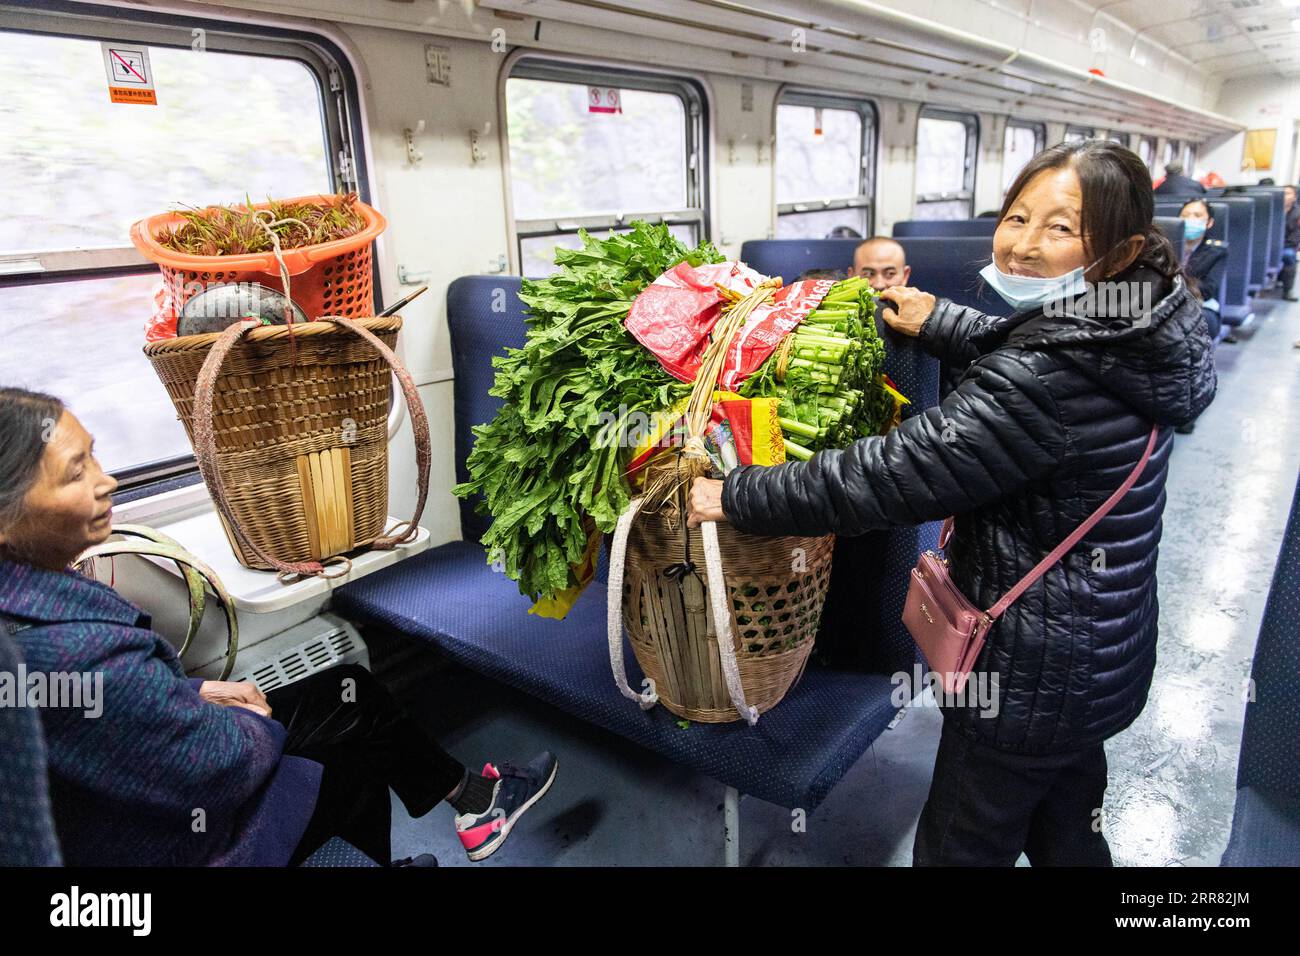 210414 -- CHANGSHA, 14 aprile 2021 -- Un passeggero tiene verdure fresche sul treno 7266 nella provincia centrale di Hunan della Cina, 11 aprile 2021. I treni 7265/7266/7267 iniziarono a funzionare nel 1995, estendendosi per più di 300 chilometri dalla stazione di Huaihua alla stazione di Lixian. I treni passano 37 fermate lungo il tragitto in 9 ore e 16 minuti. I prezzi dei biglietti variano da 1 yuan a 23,5 yuanabout 0,15-3,59 dollari americani, che non sono stati aumentati in 26 anni. I treni attraversano le Wuling Mountains. Grazie a loro, gli abitanti del villaggio non possono solo portare fuori frutta, verdura e altri prodotti locali Foto Stock